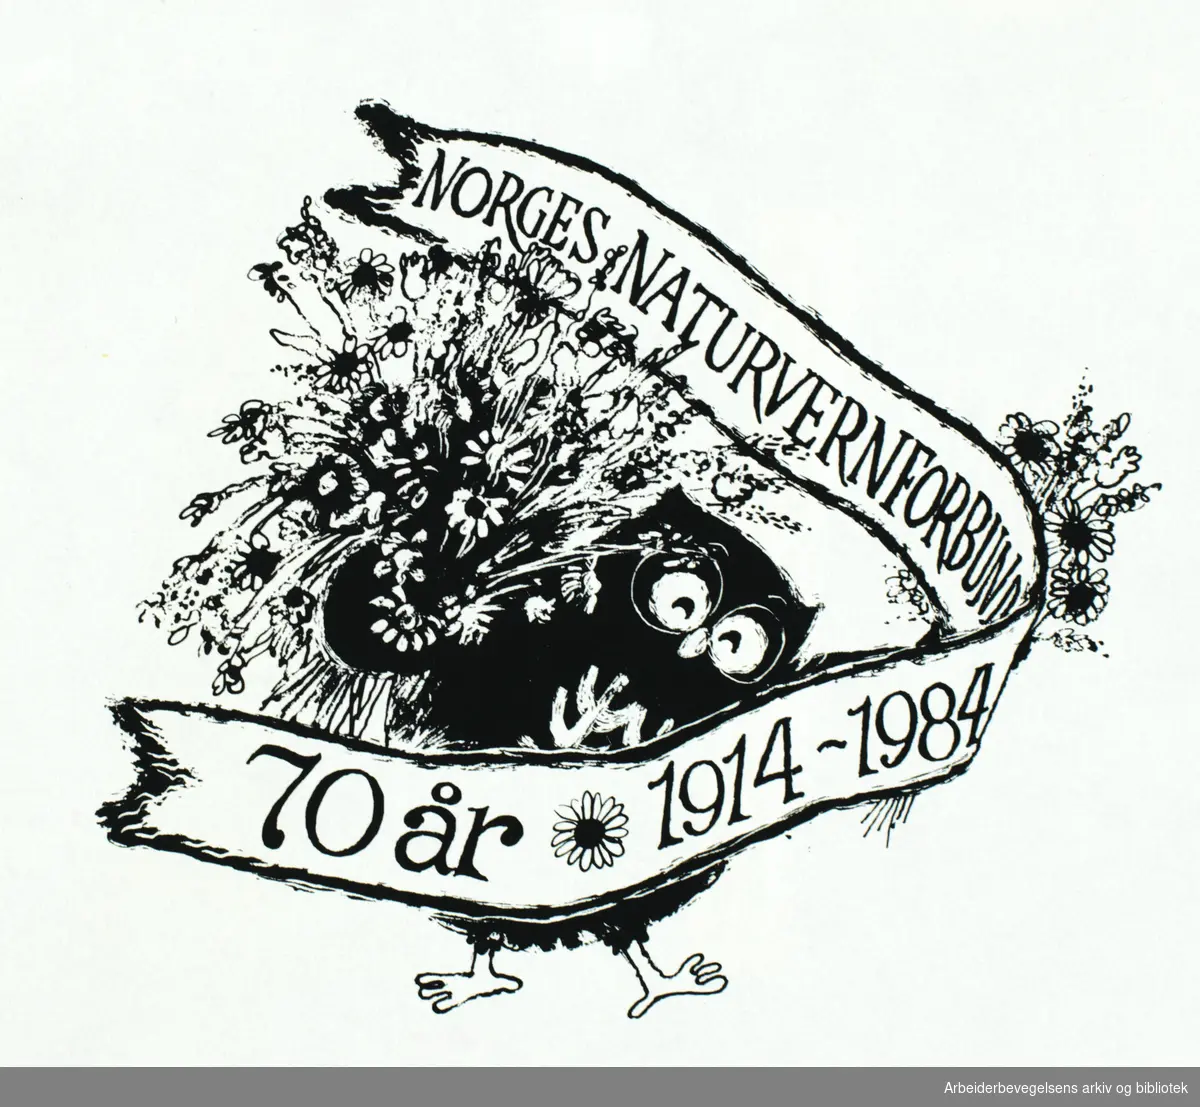 Norges naturnvernforbund 70 år, 1914-1984. Tegnet av Vivian Zahl Olsen.